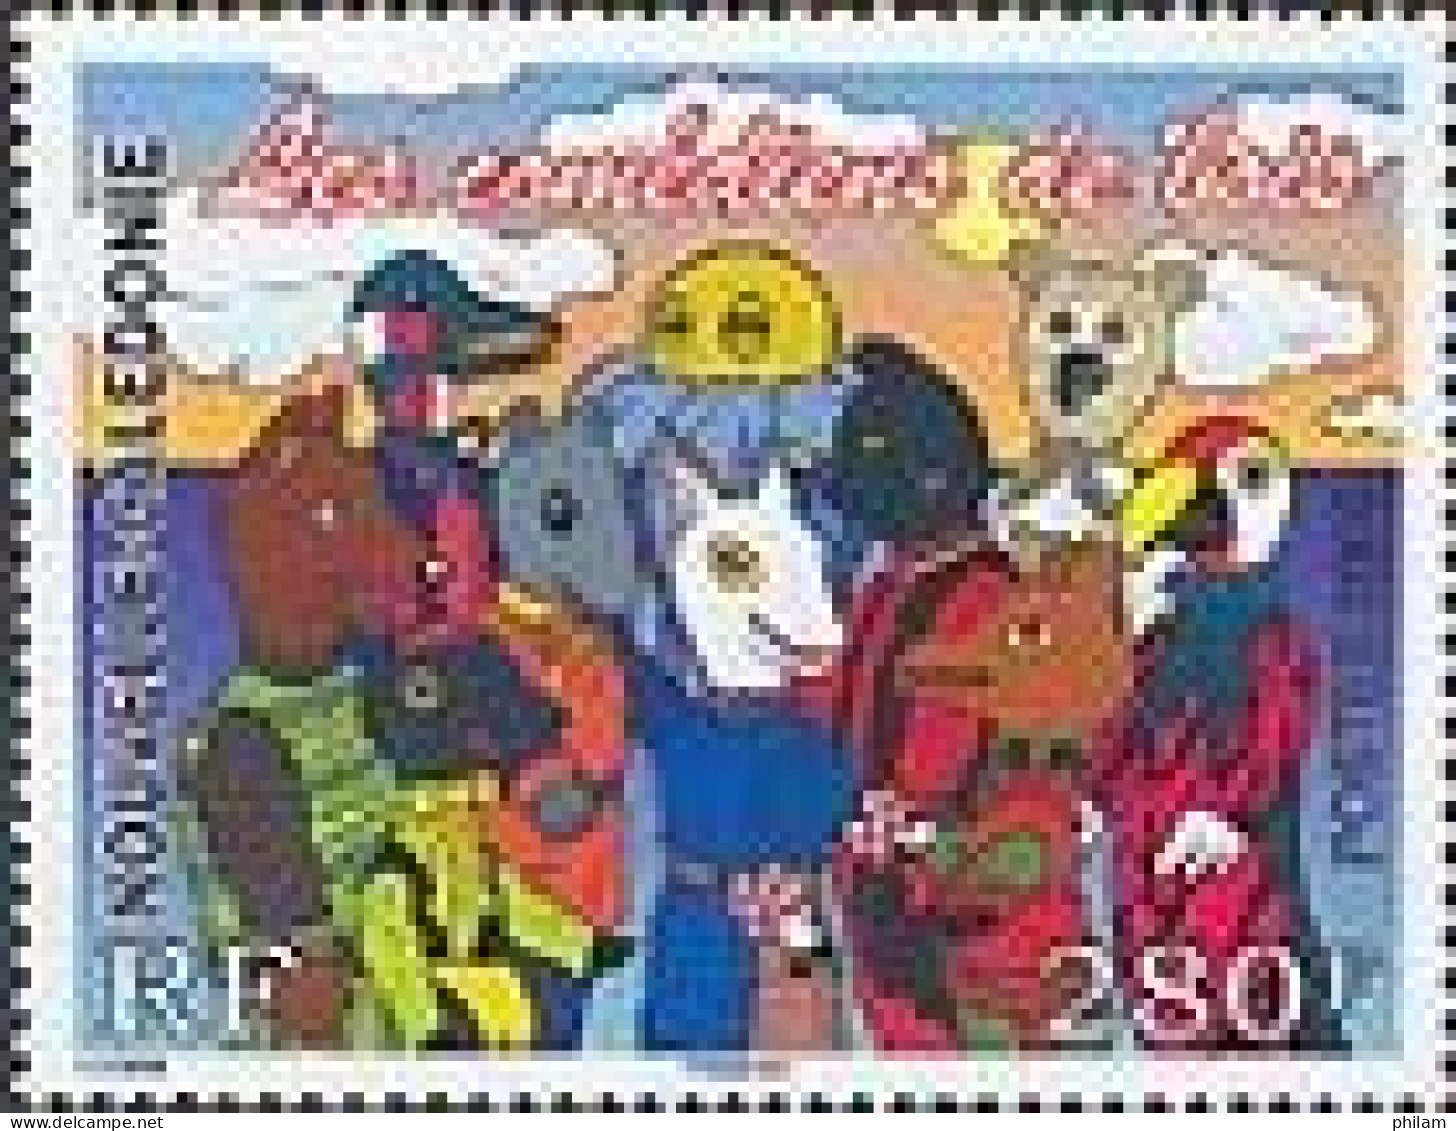 NOUVELLE CALEDONIE 2006 - Comédiens De Bois - 1 V. - Unused Stamps